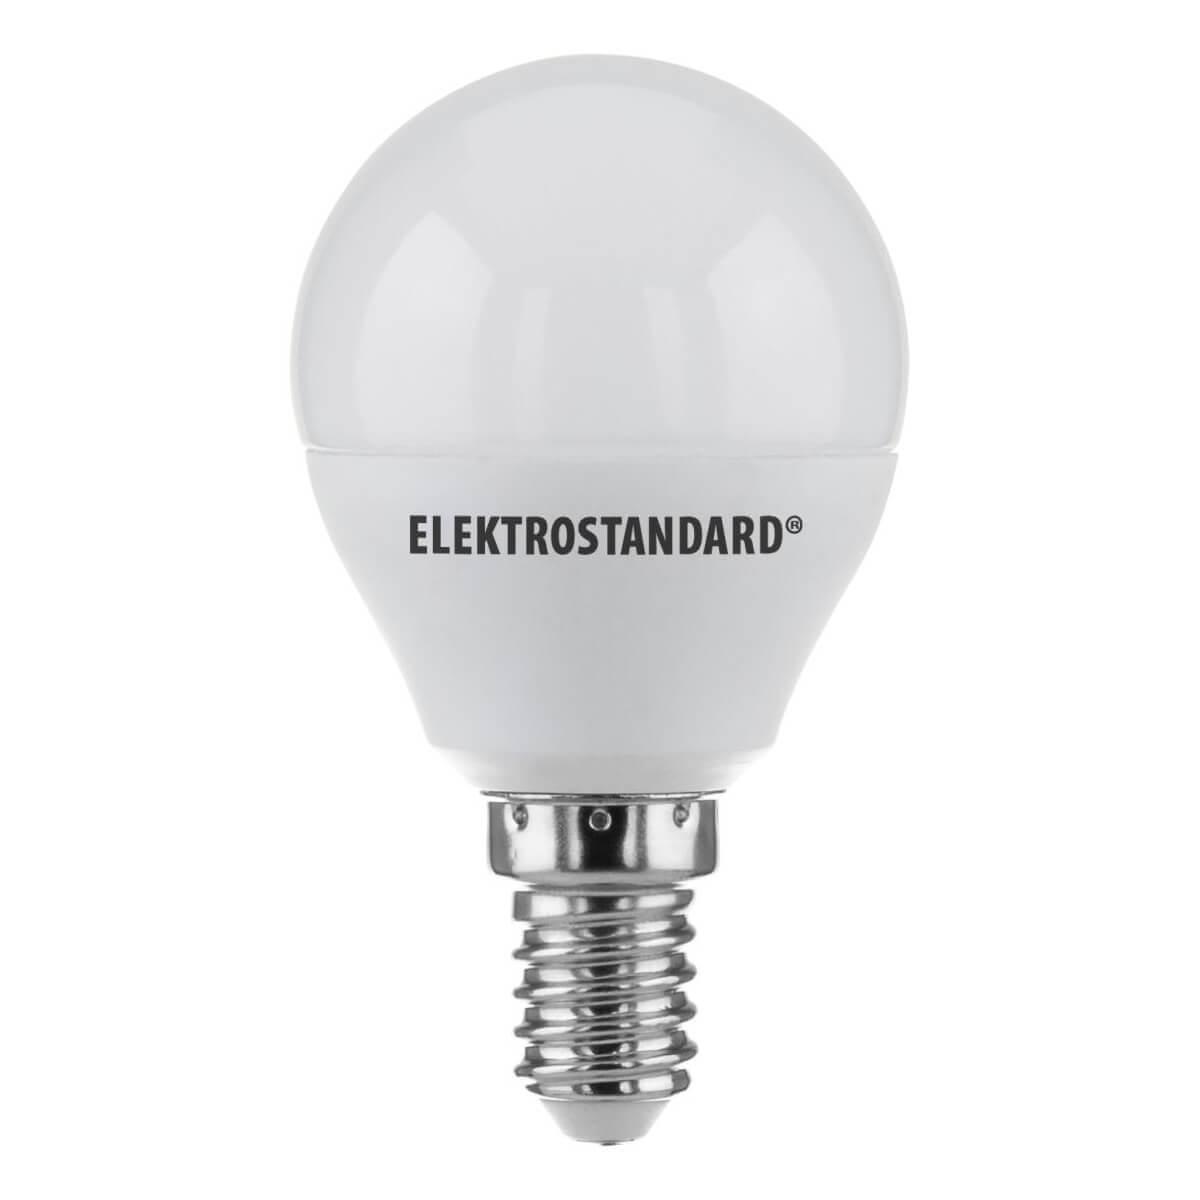   Elektrostandard E14 7W 4200K  a049000